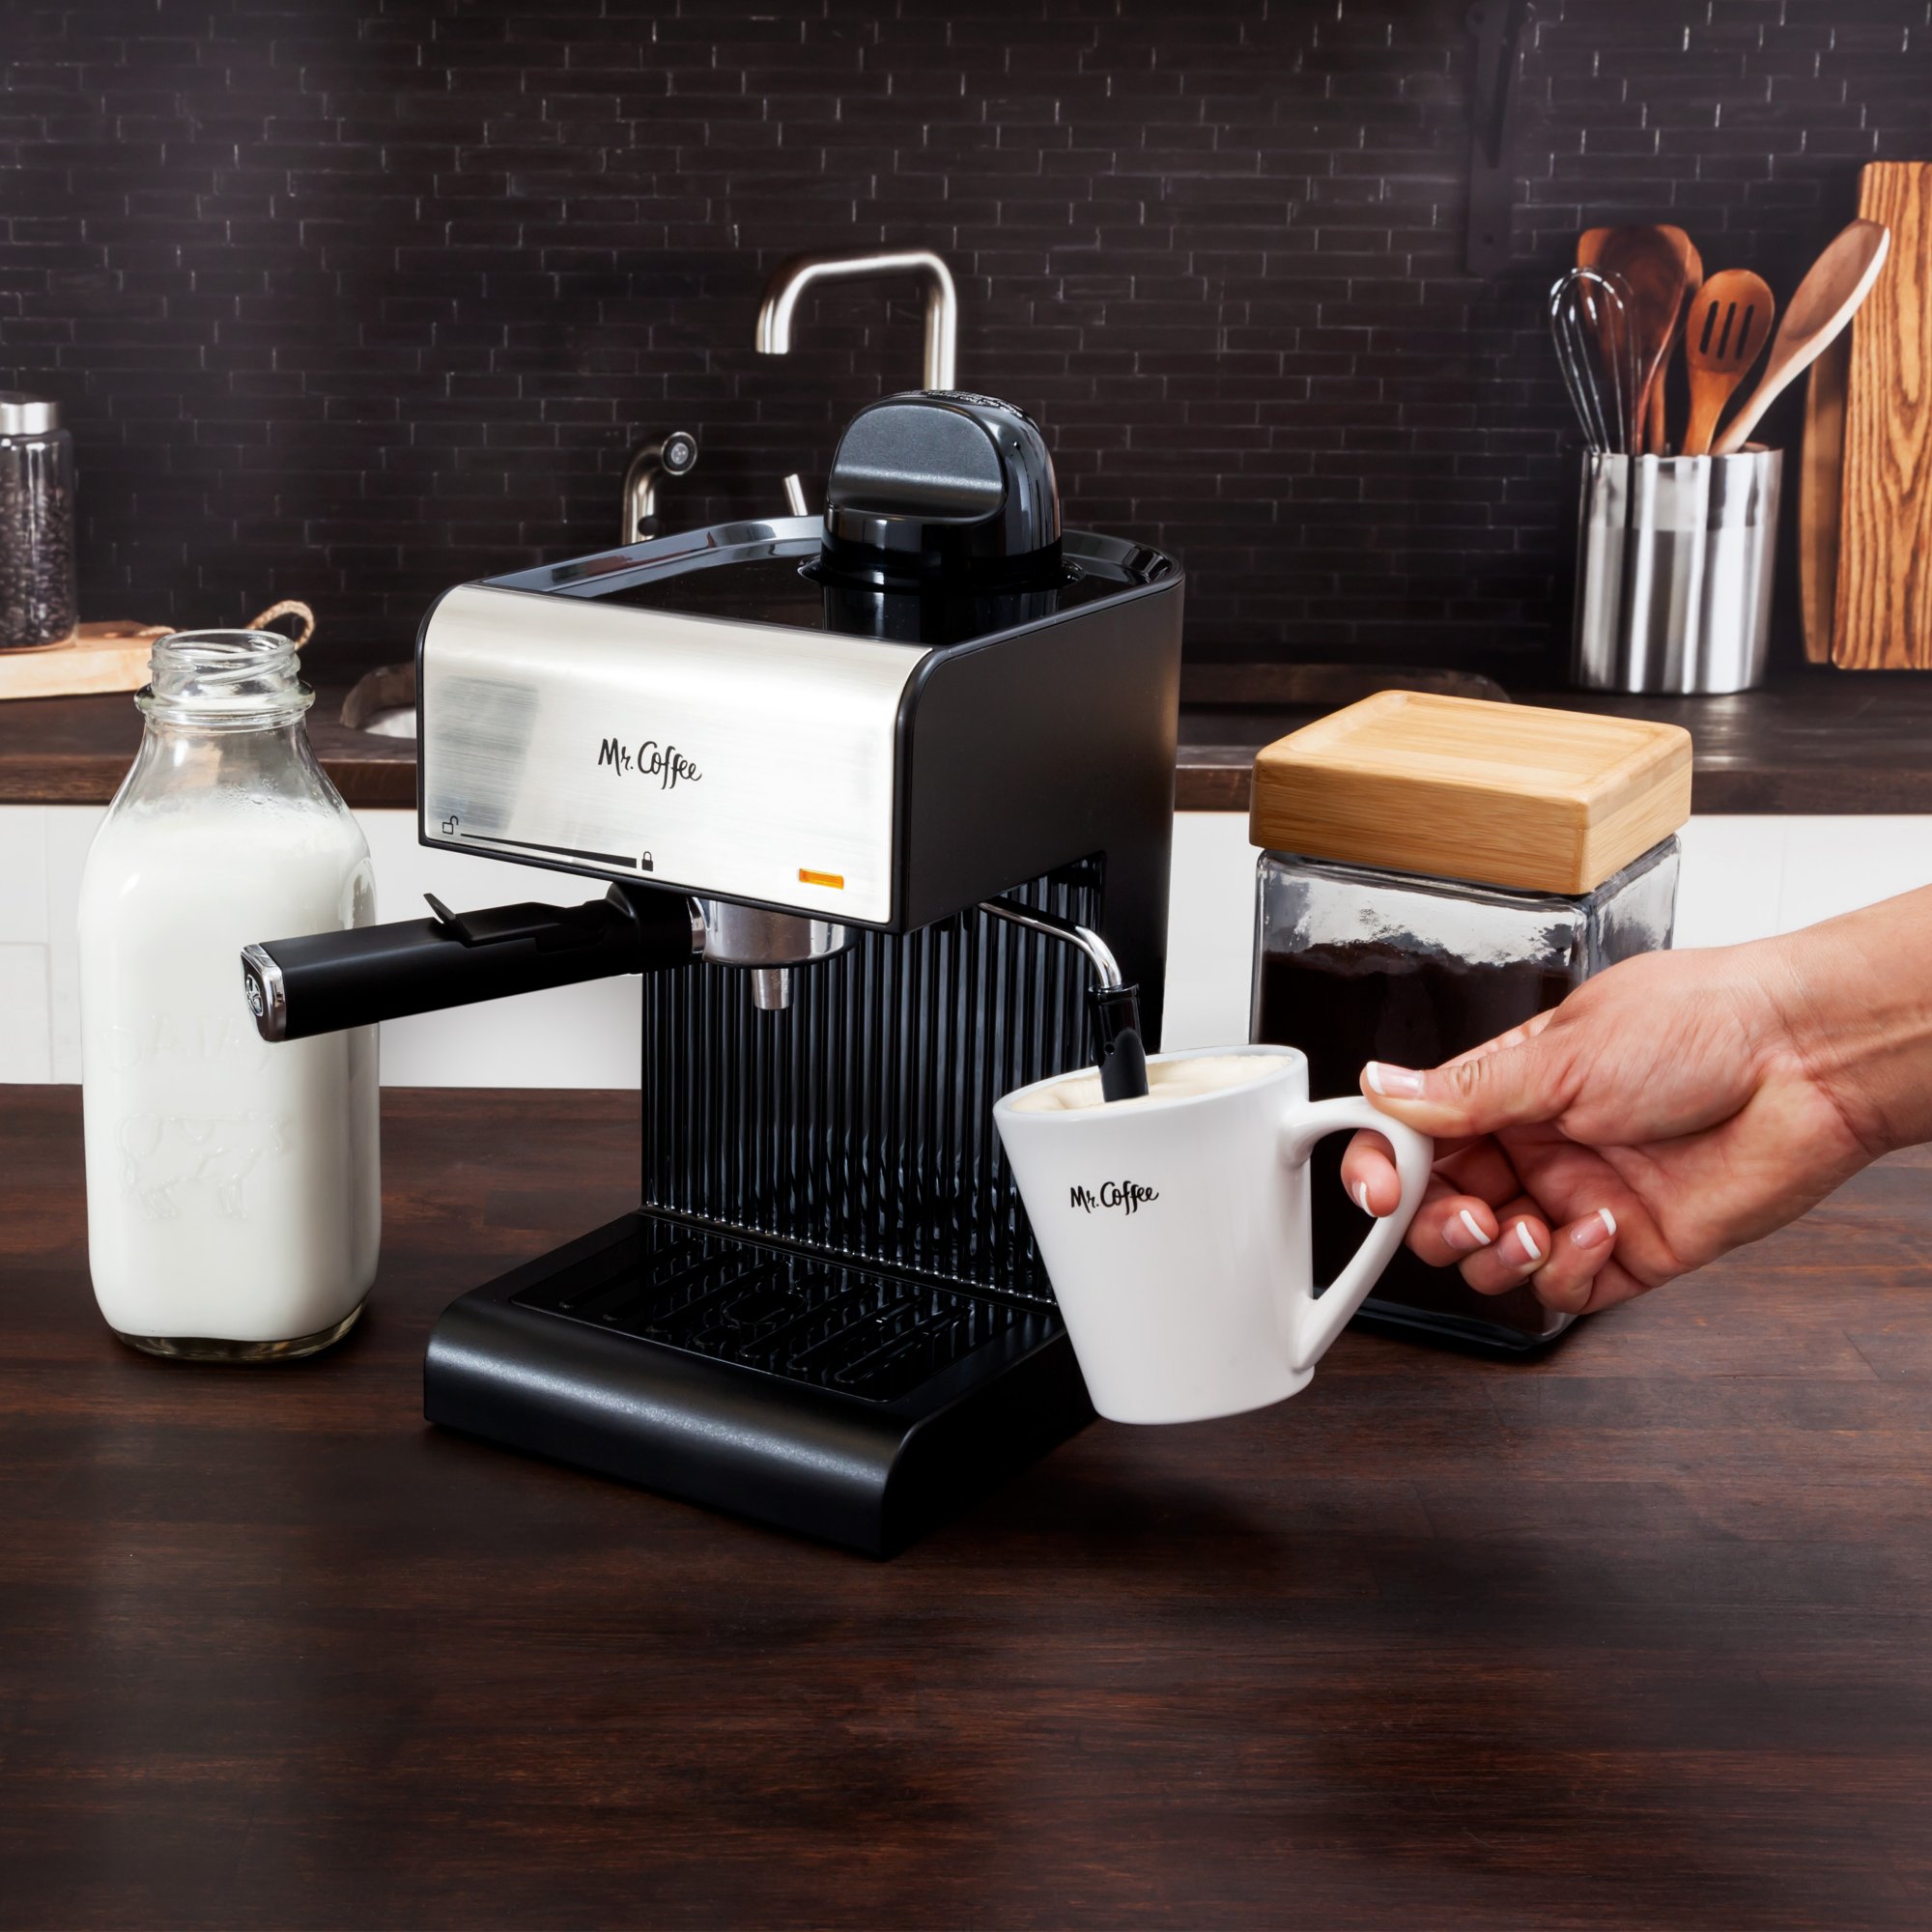 NEW Mr Coffee ECM250 4 Cup Steam Espresso Cappuccino Maker !! 72179229155